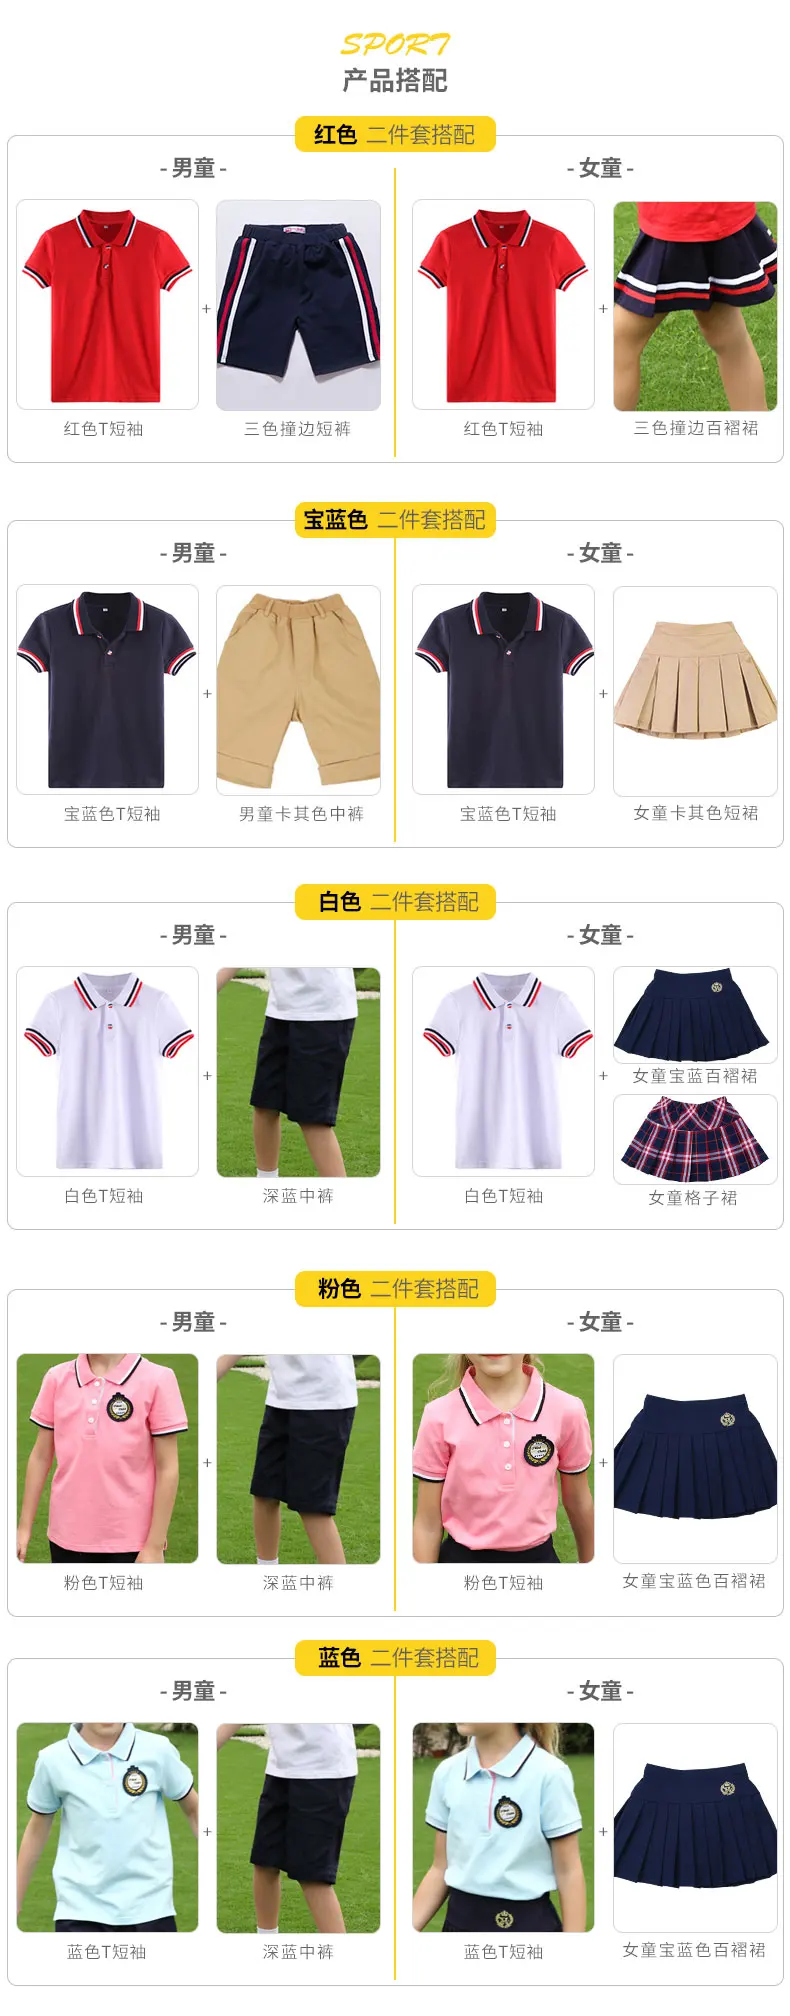 Новая мода высокое качество средней школы Студенческая форма обувь для мальчиков Корея studens юбка и полор рубашка комплект хлопок